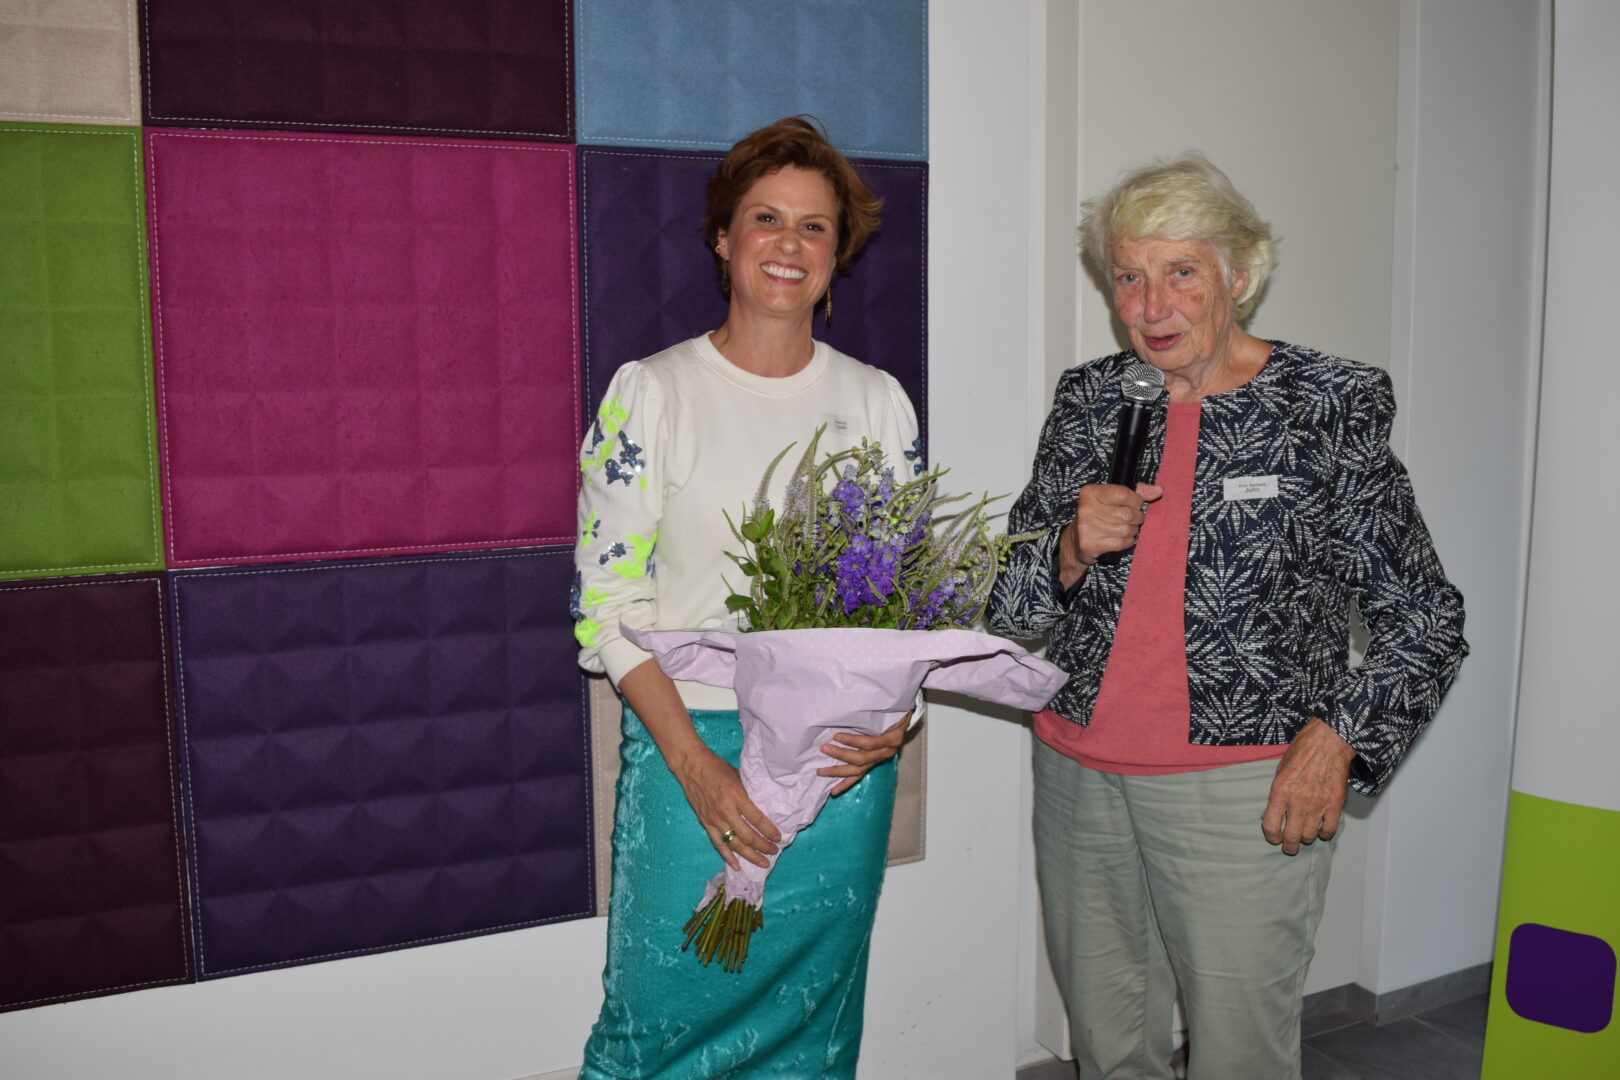 Prof. Barbara John dankt mit einem Mikrofon in der Hand der Festrednerin Beatrice Loeb, die lächelnd einen Strauß Blumen in der Hand hält.